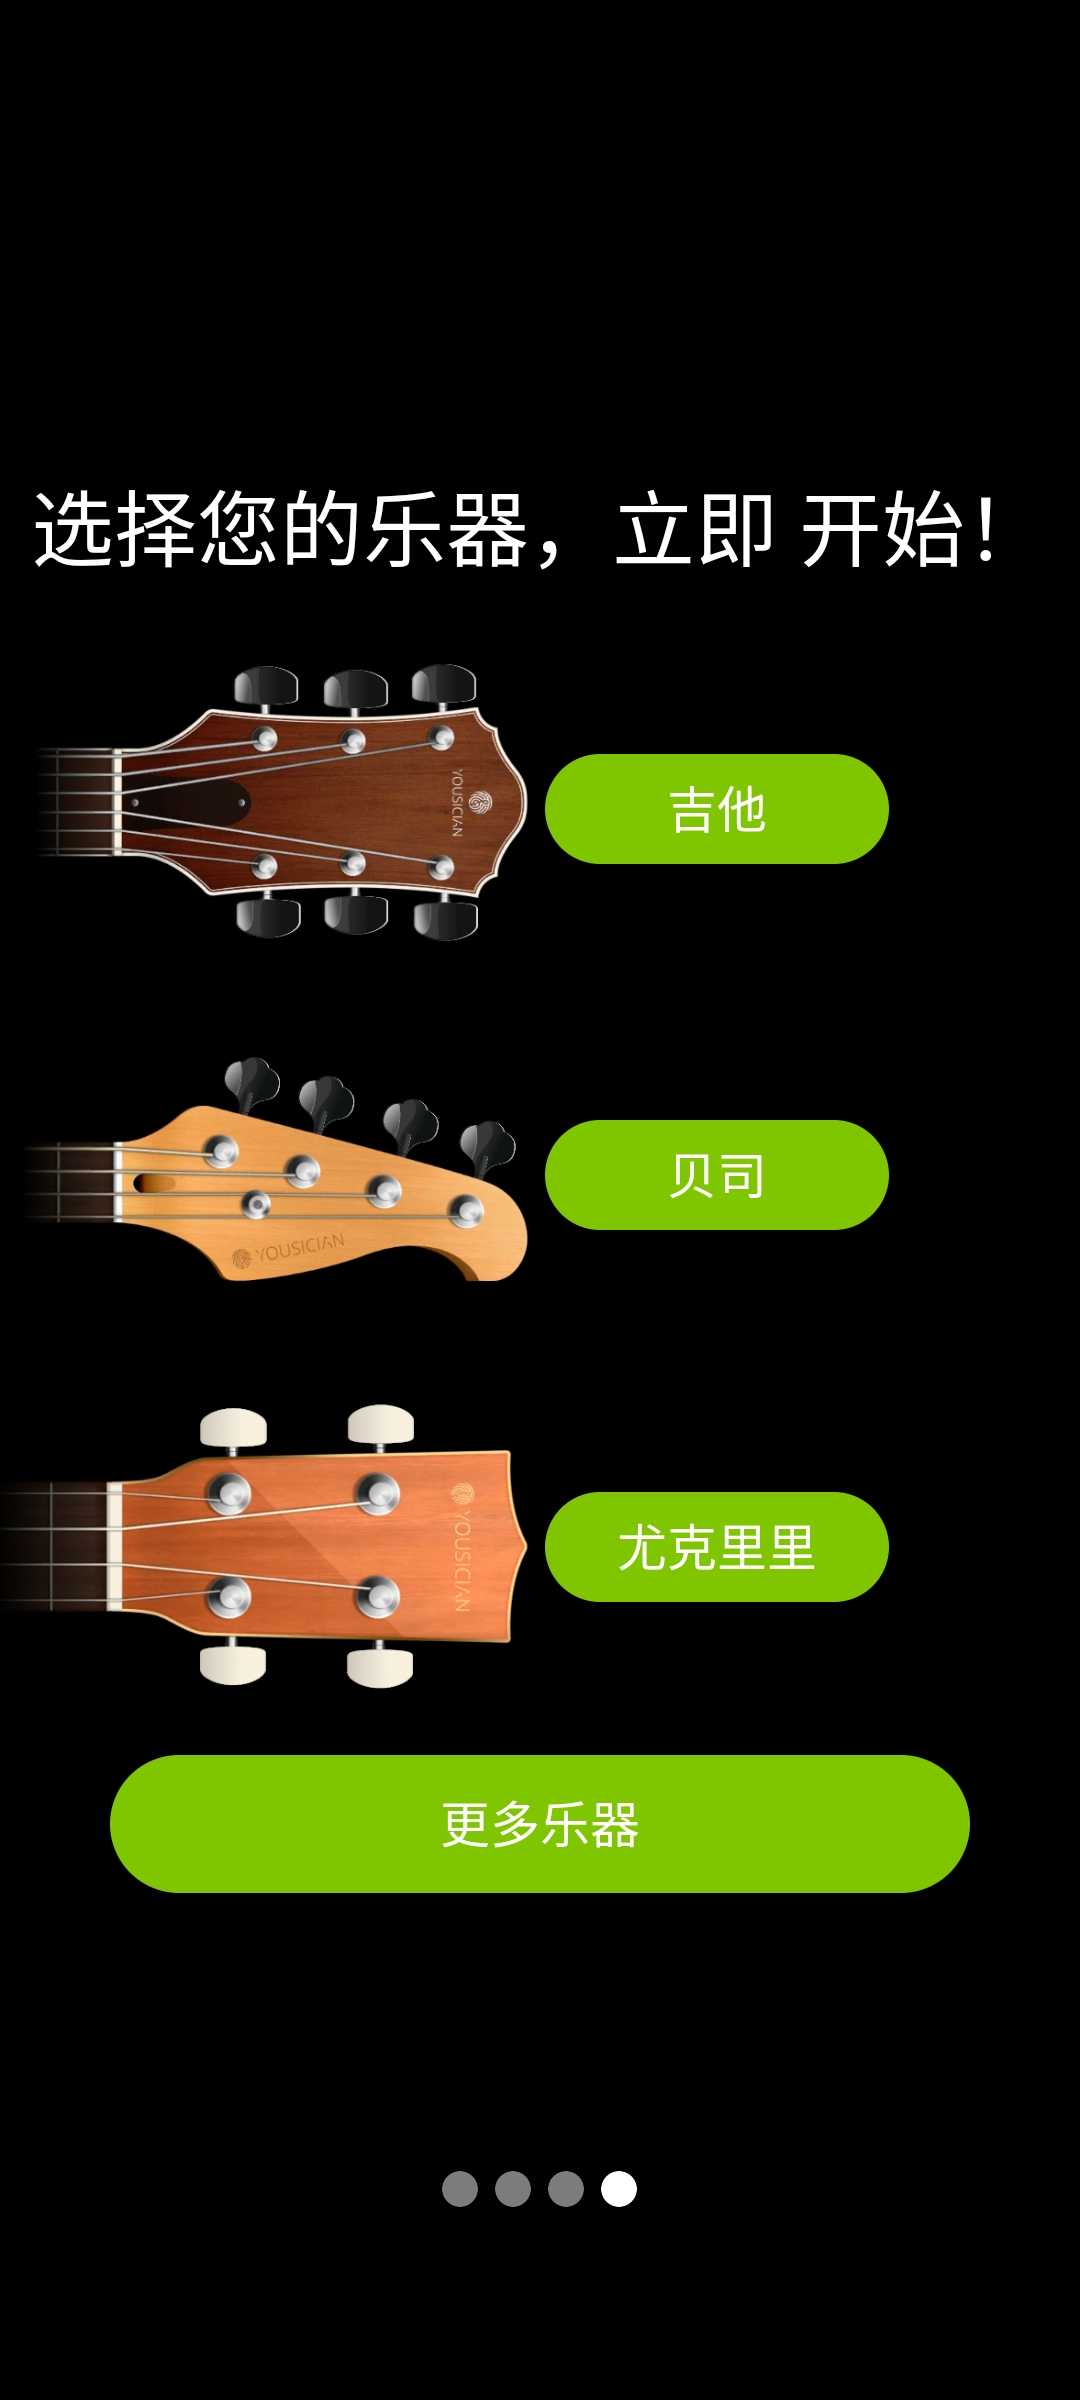 吉他调音器官方版(GuitarTuna)